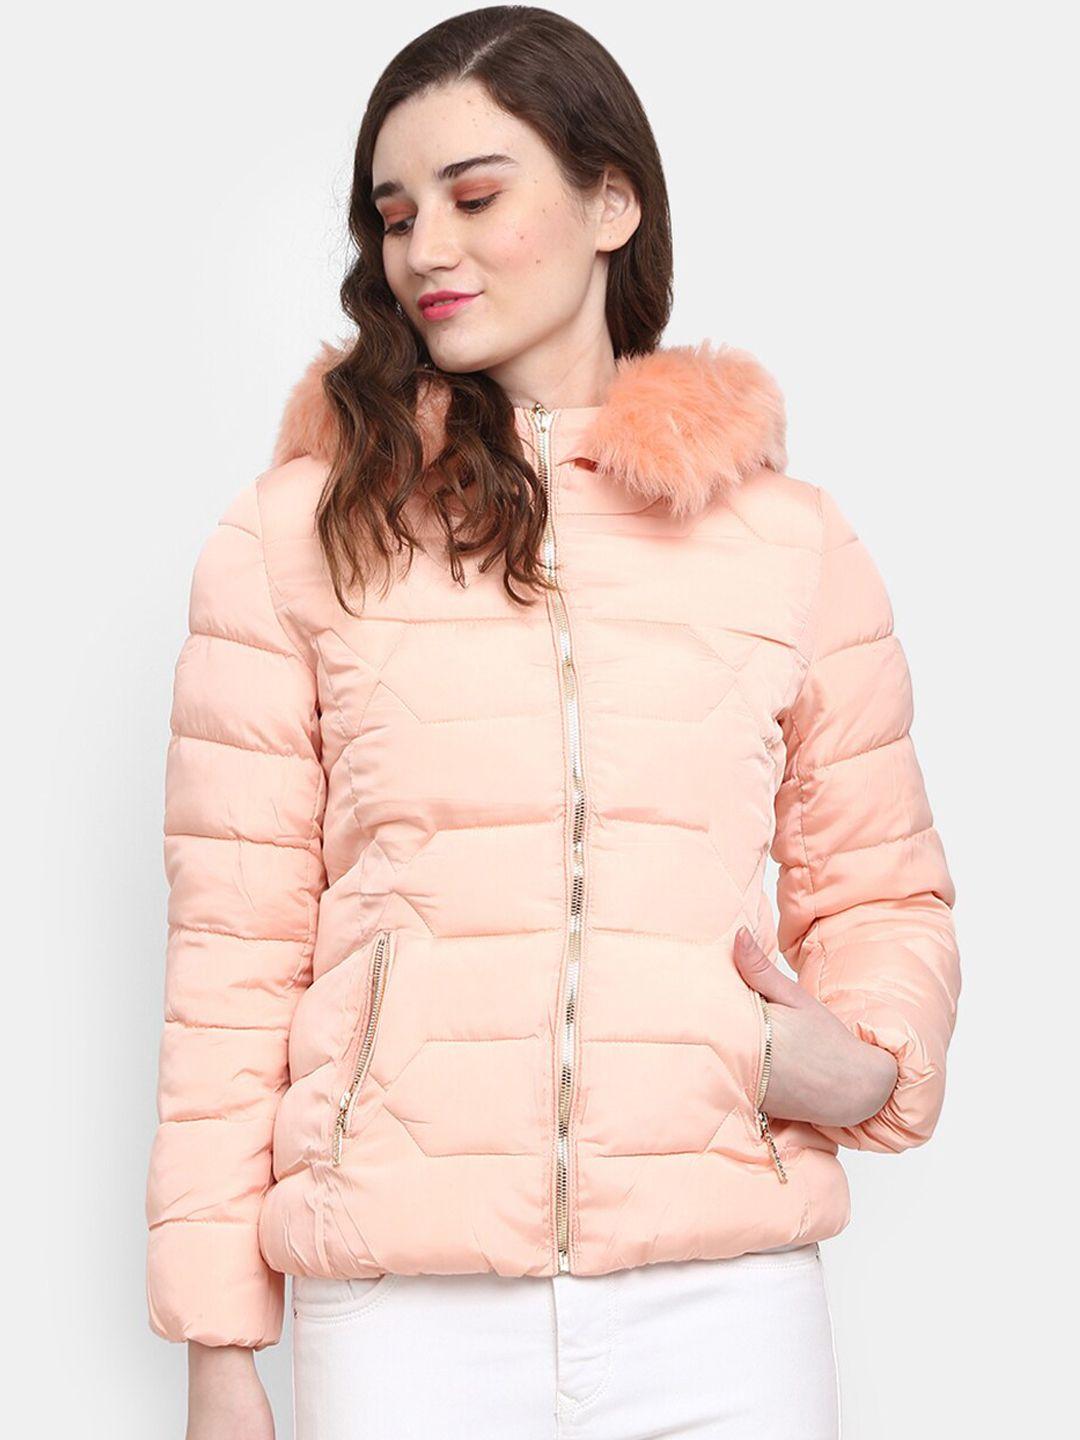 v-mart women pink lightweight hooded outdoor puffer jacket